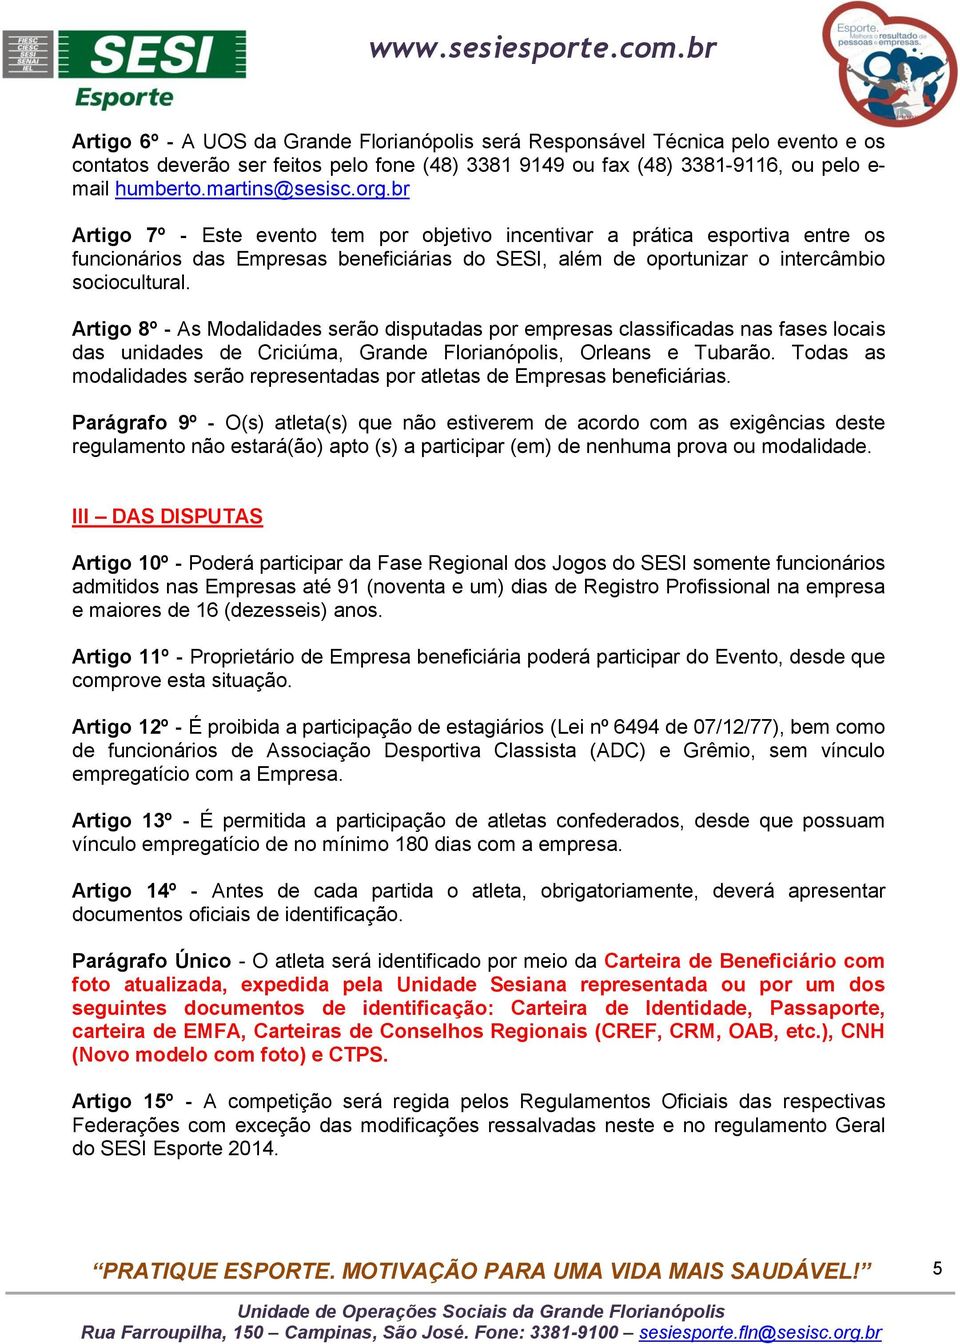 Artigo 8º - As Modalidades serão disputadas por empresas classificadas nas fases locais das unidades de Criciúma, Grande Florianópolis, Orleans e Tubarão.